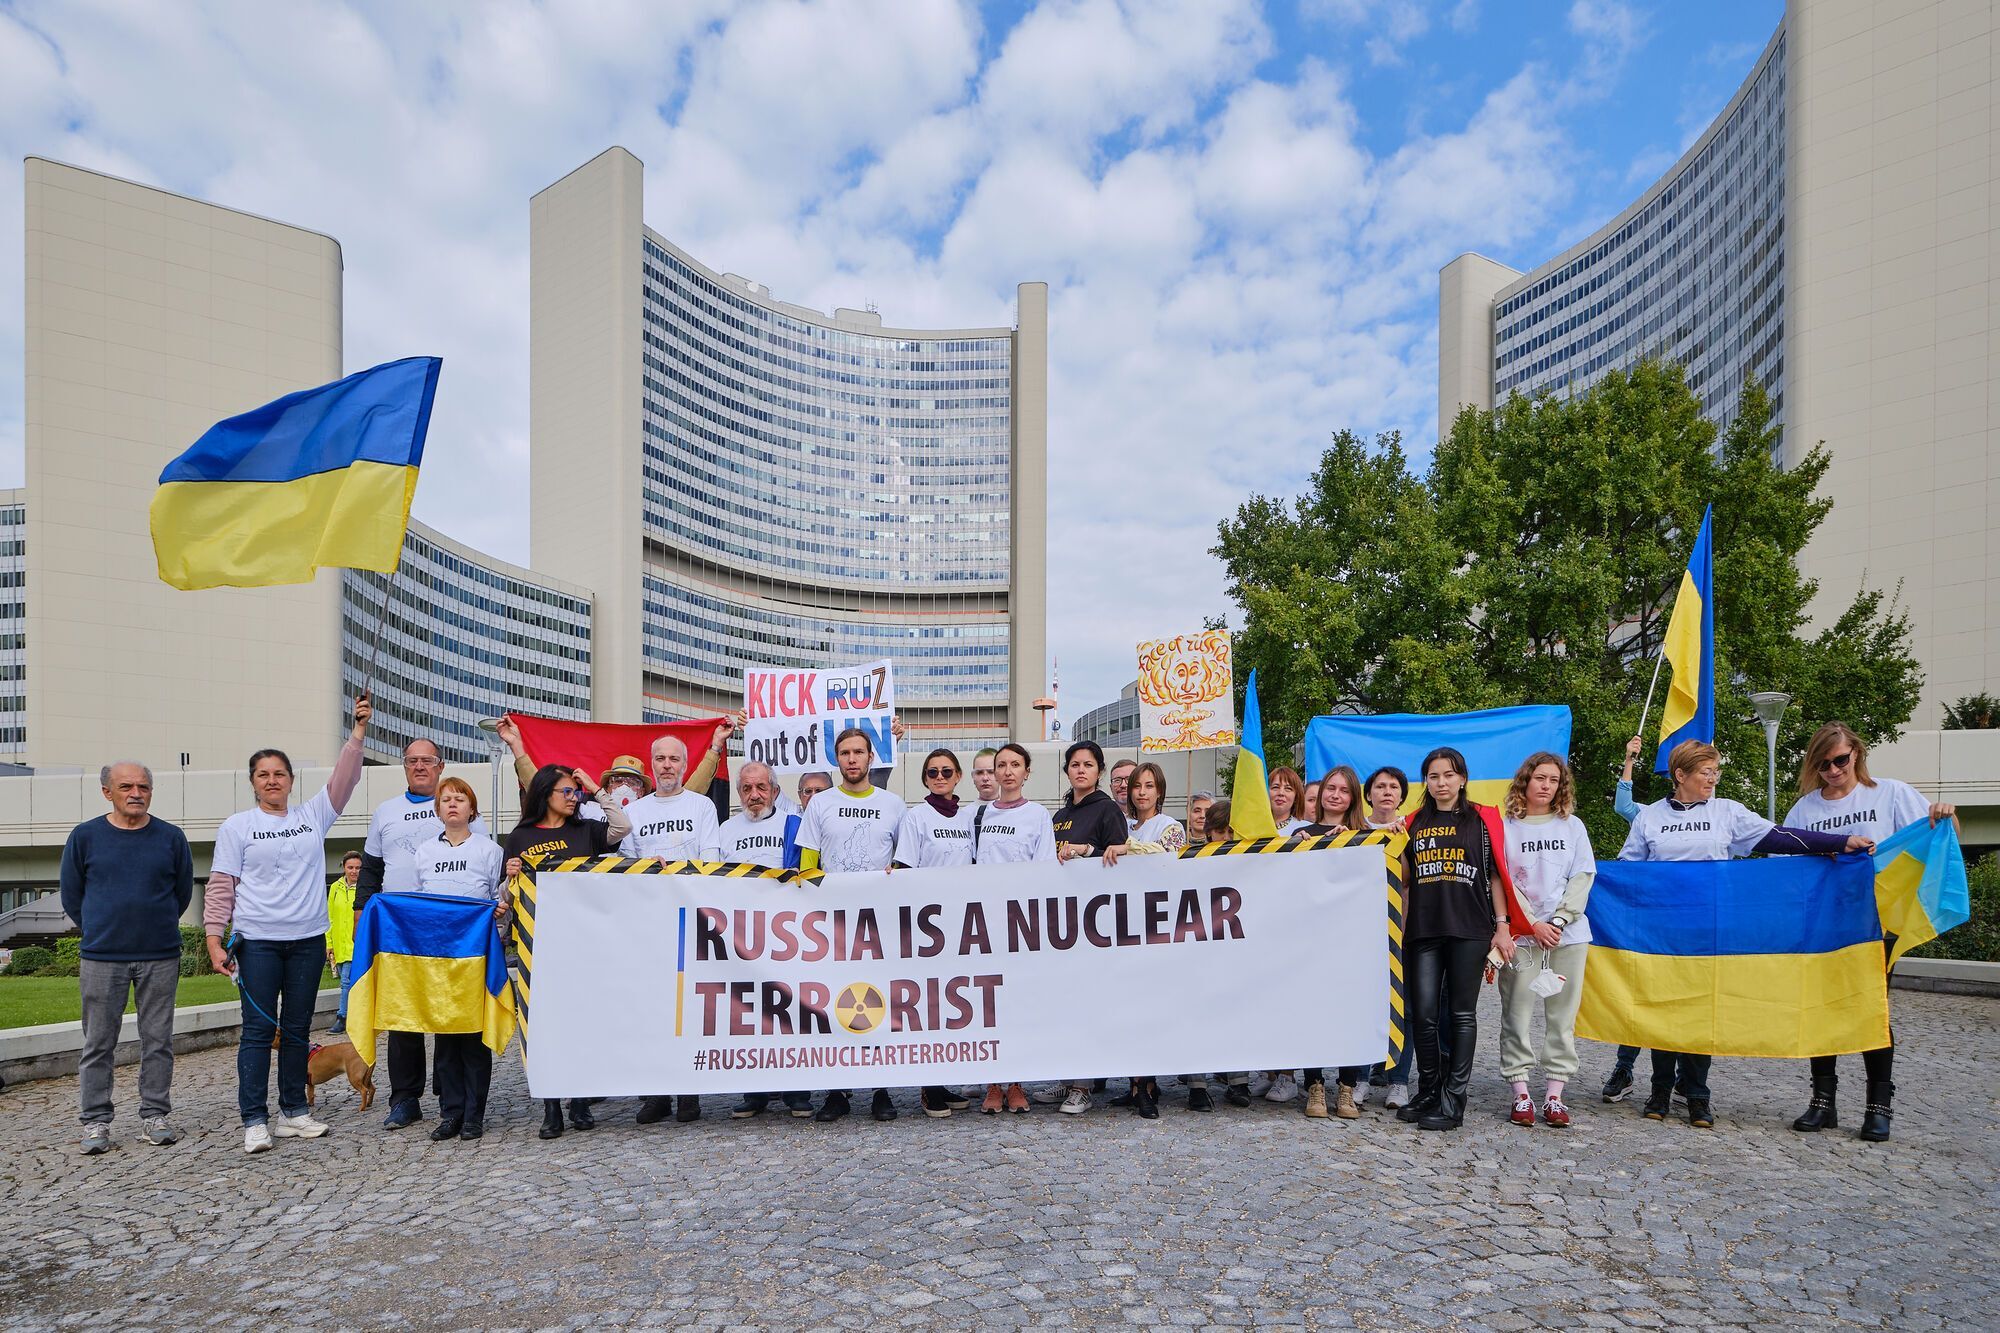 "Покрытые ядерным пеплом": в Вене участники акции против членства России в МАГАТЭ устроили жуткий перформанс. Фото